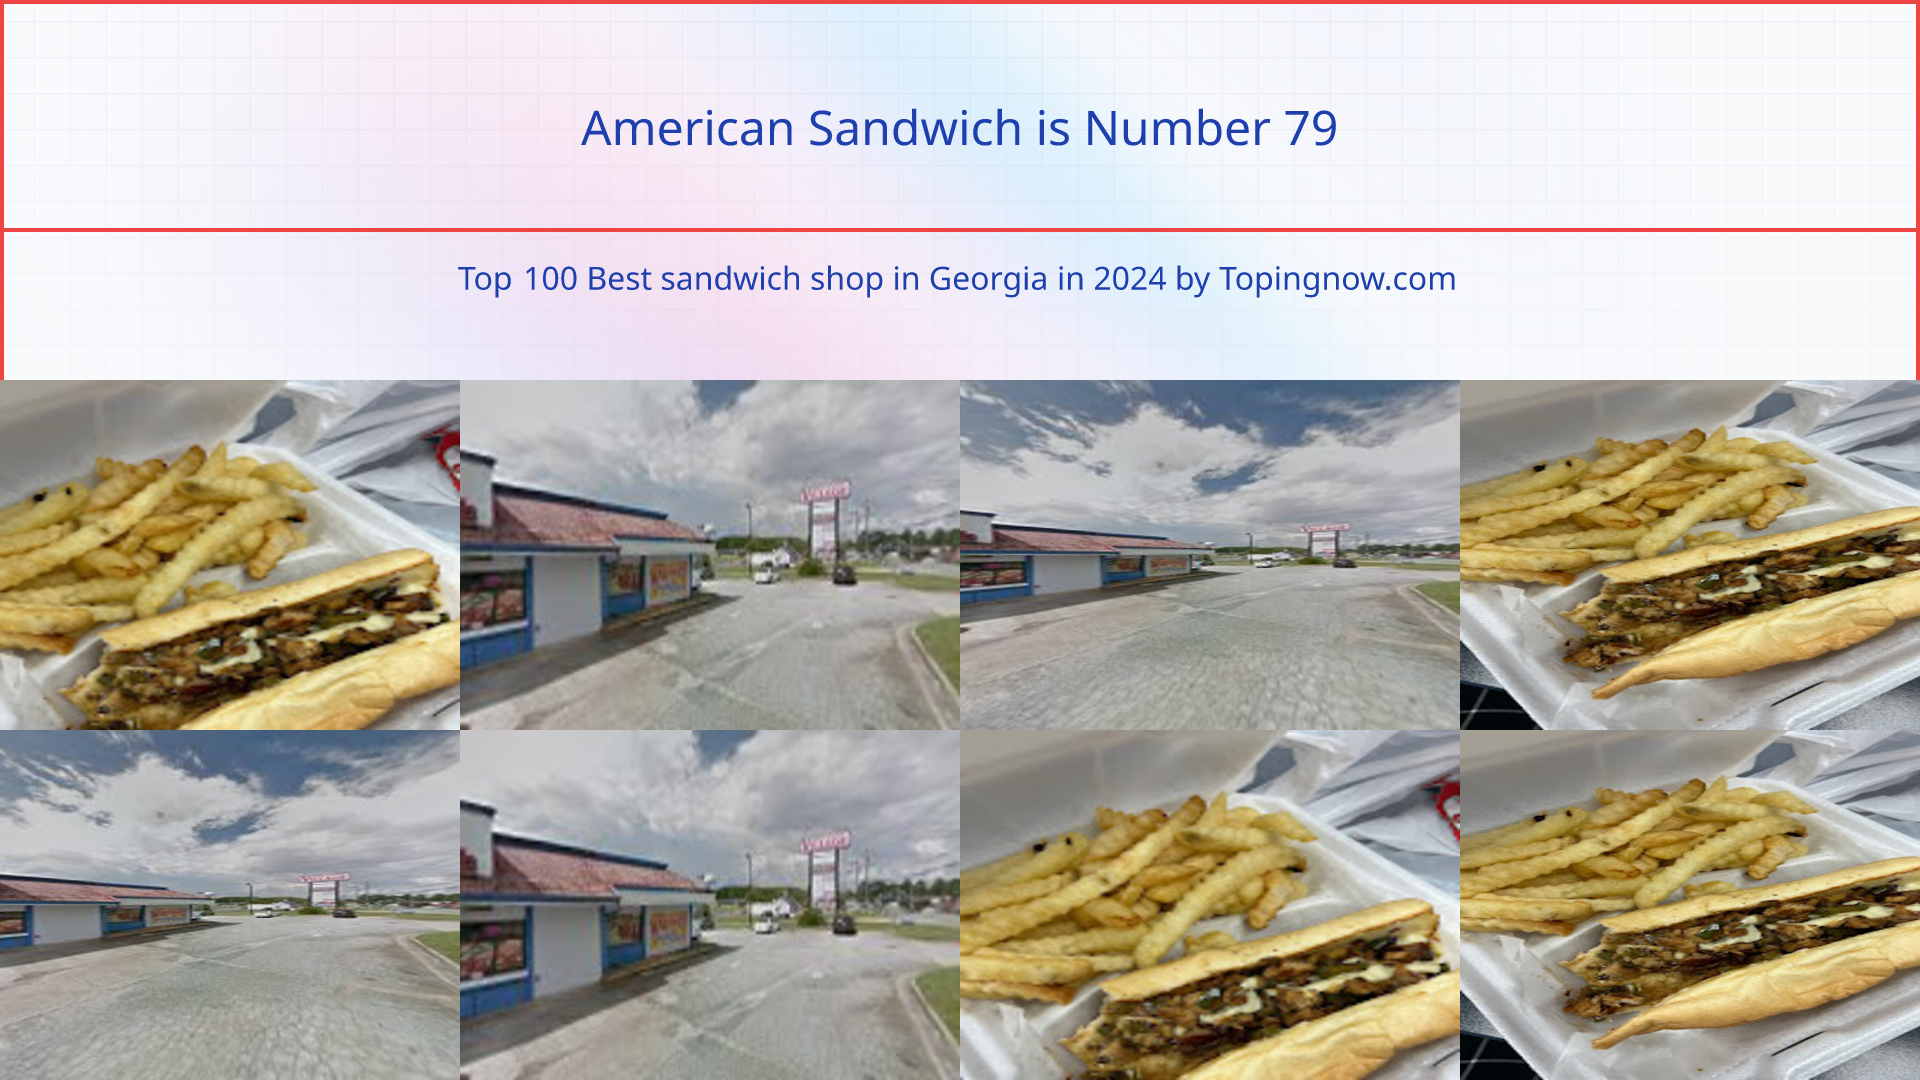 American Sandwich: Top 100 Best sandwich shop in Georgia in 2024